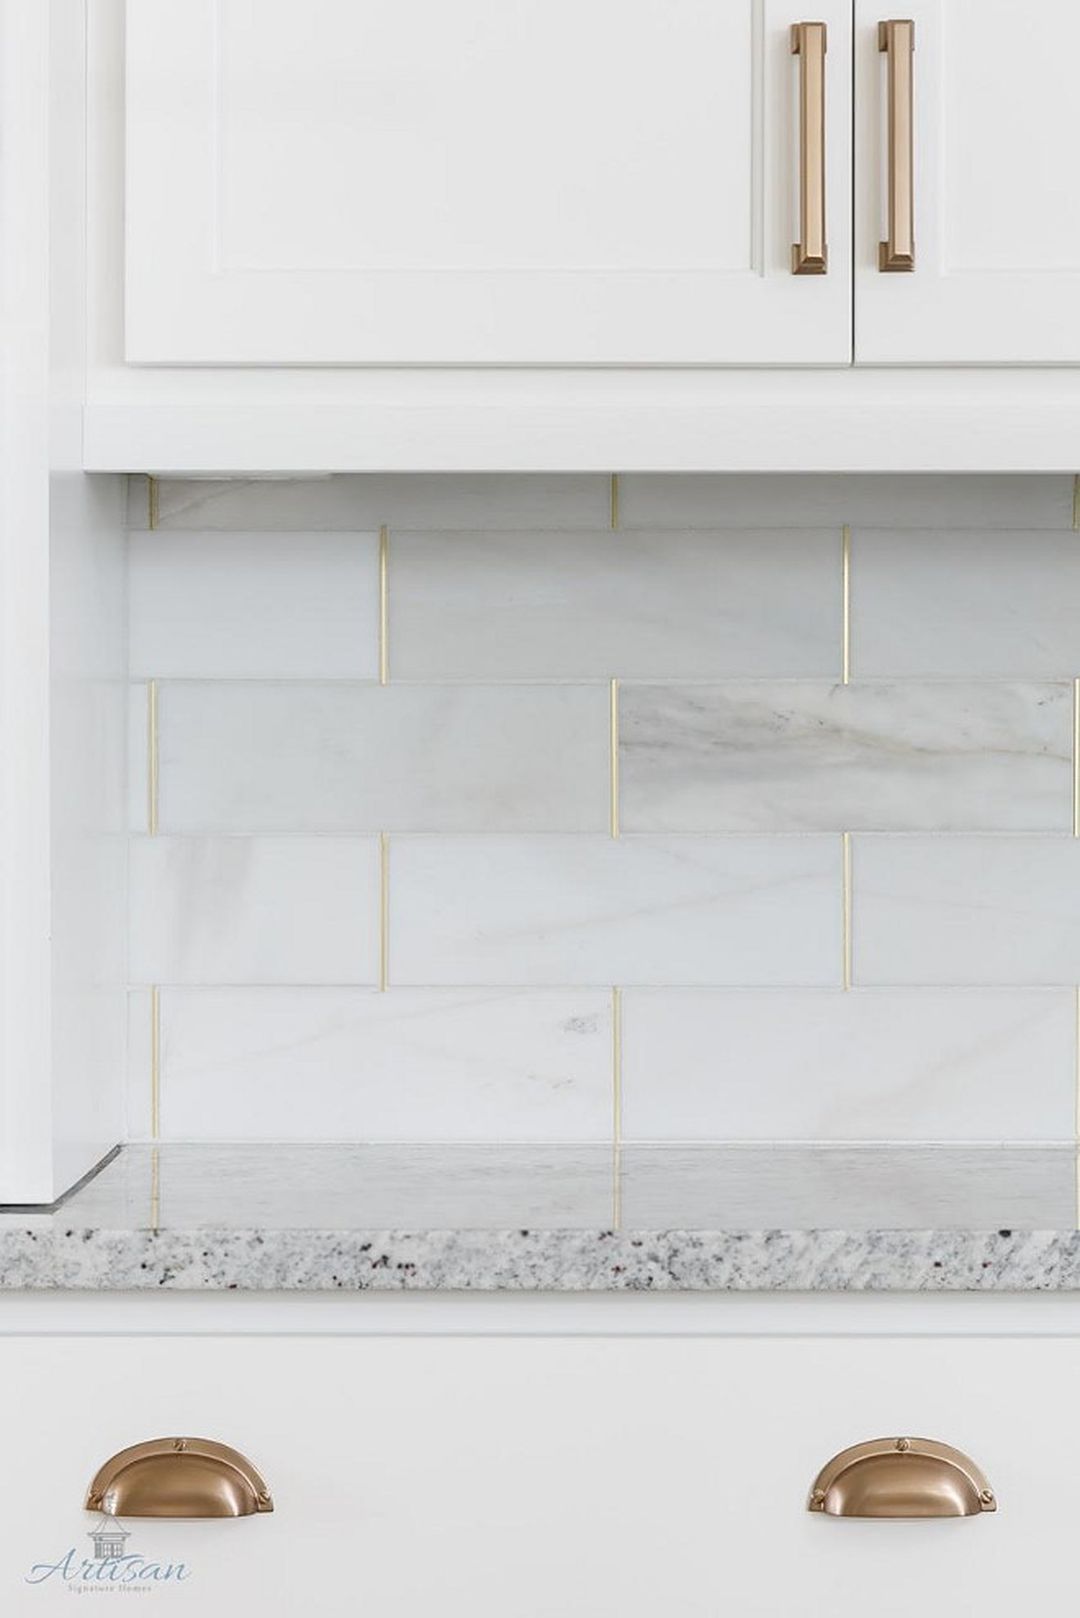 Amazing Kitchen Tile Backsplash With Brass Schluter Strips (32) - Onechitecture